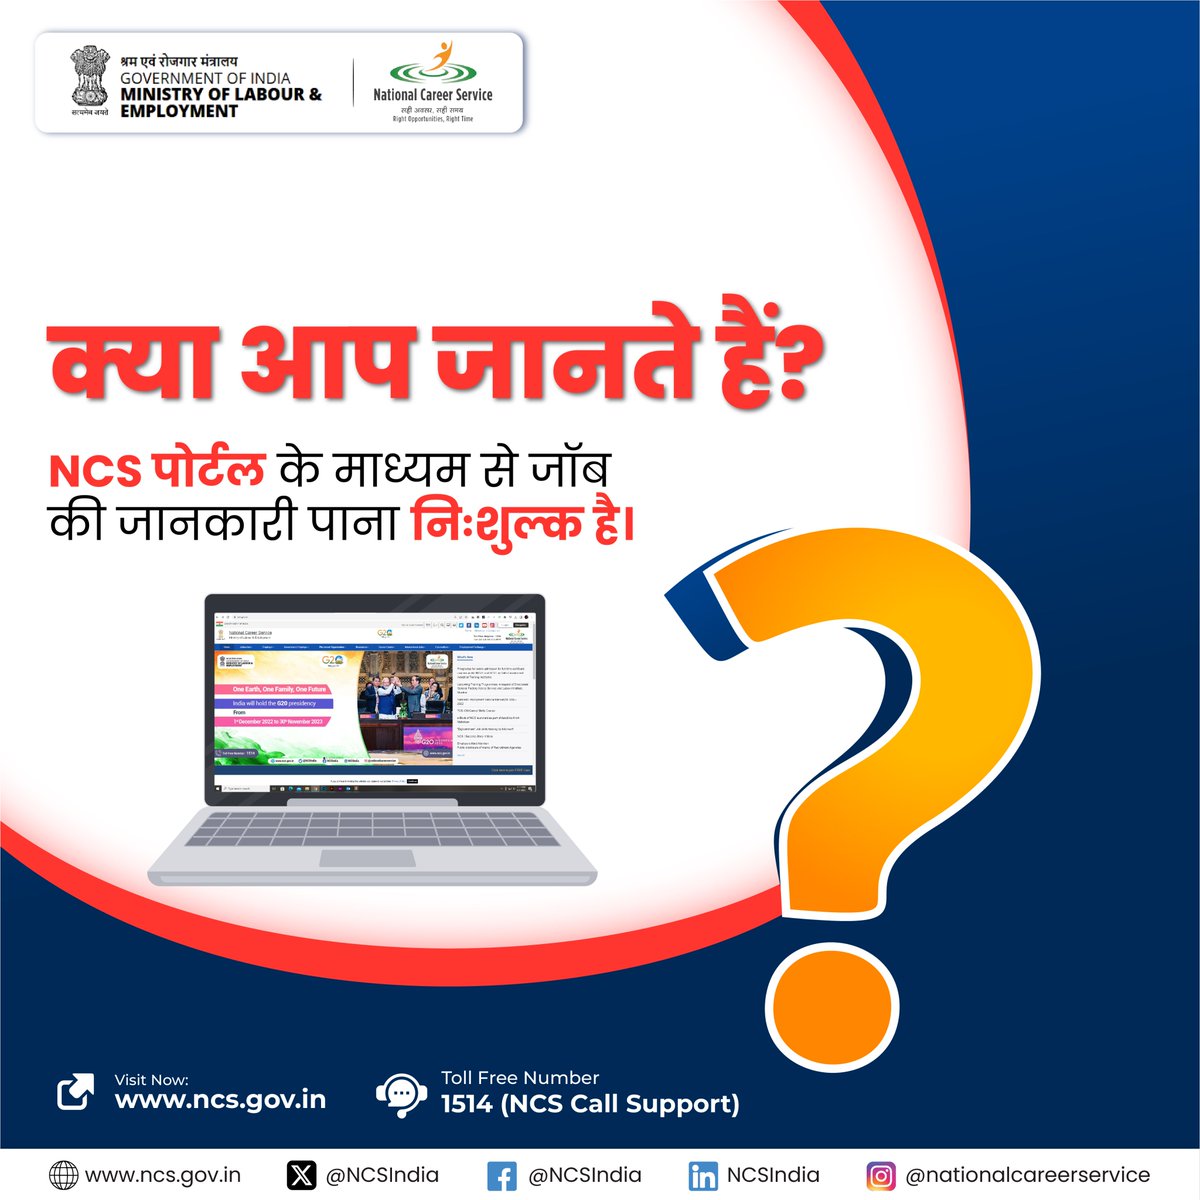 NCS पोर्टल के माध्यम से जॉब संबंधित जानकारियांआपको नि:शुल्क प्राप्त होती है।

#NCSIndia #jobseekers #jobsearch #awareness #support #question #CommentShare